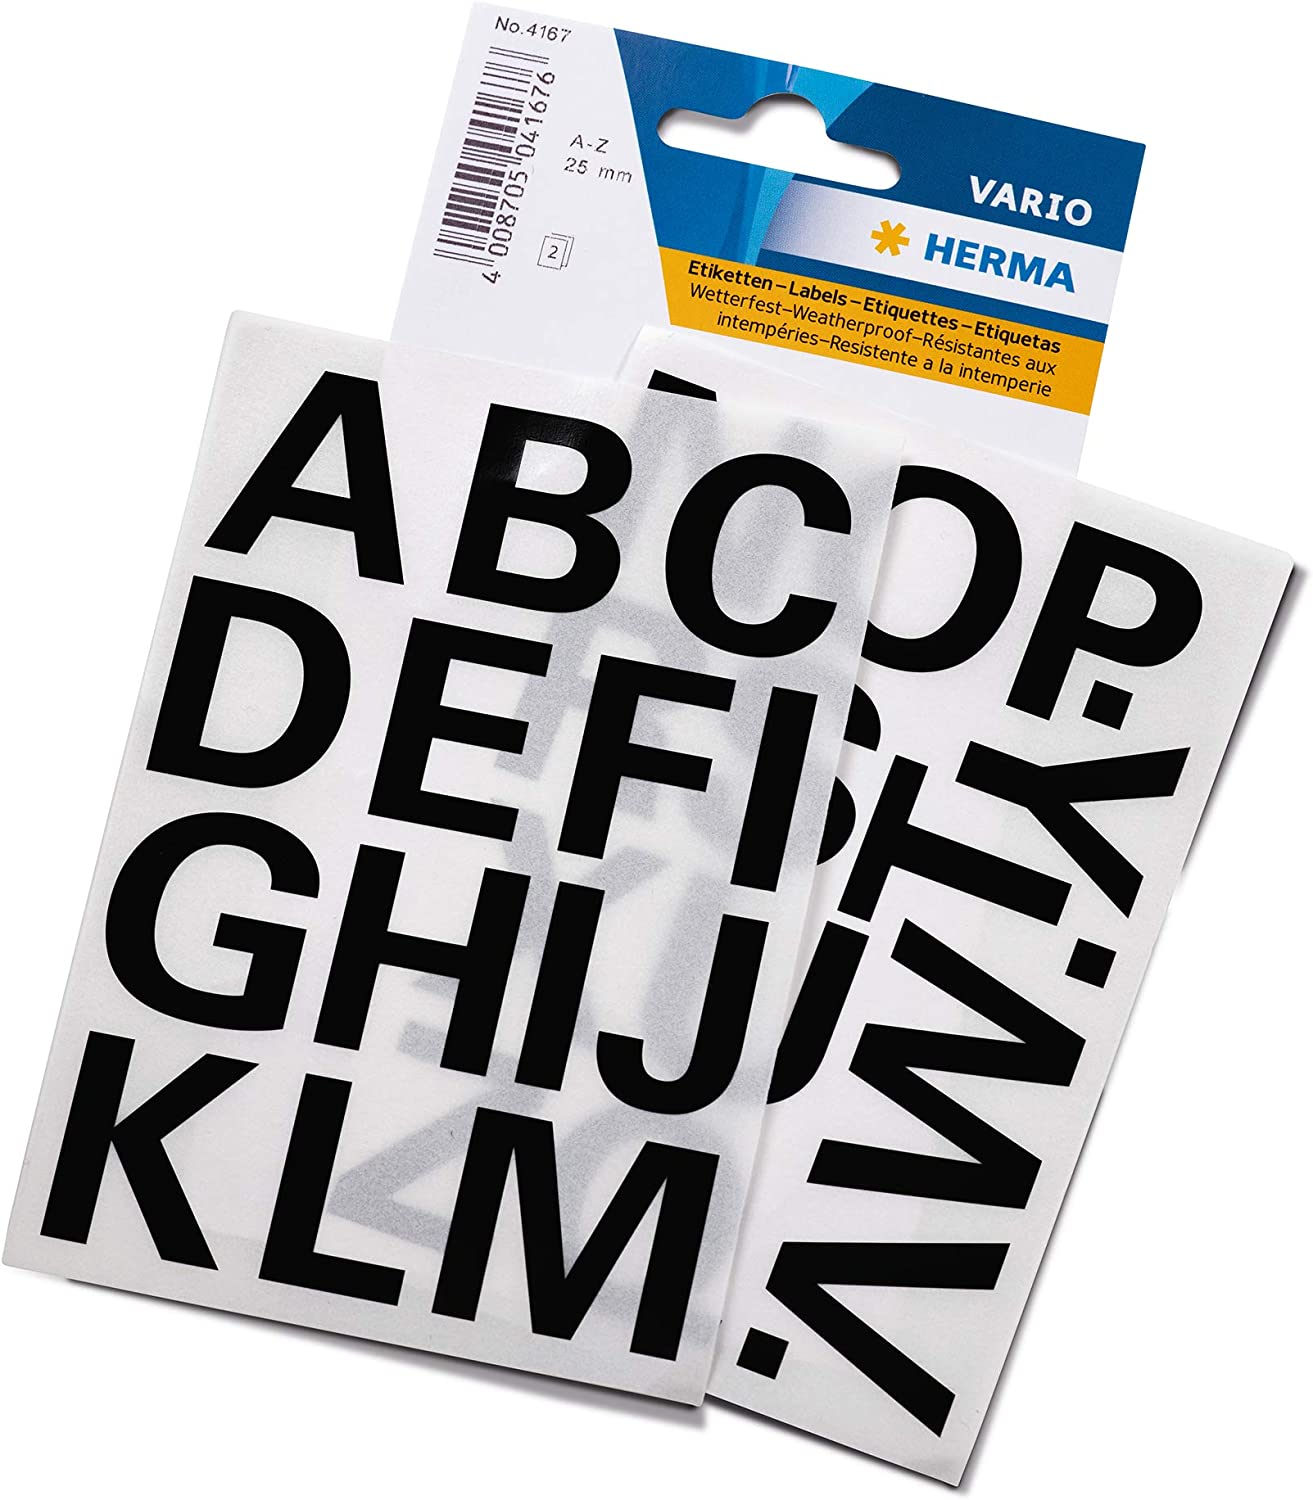 HERMA Buchstaben-Sticker A-Z, Folie schwarz, 25 mm hoch ...